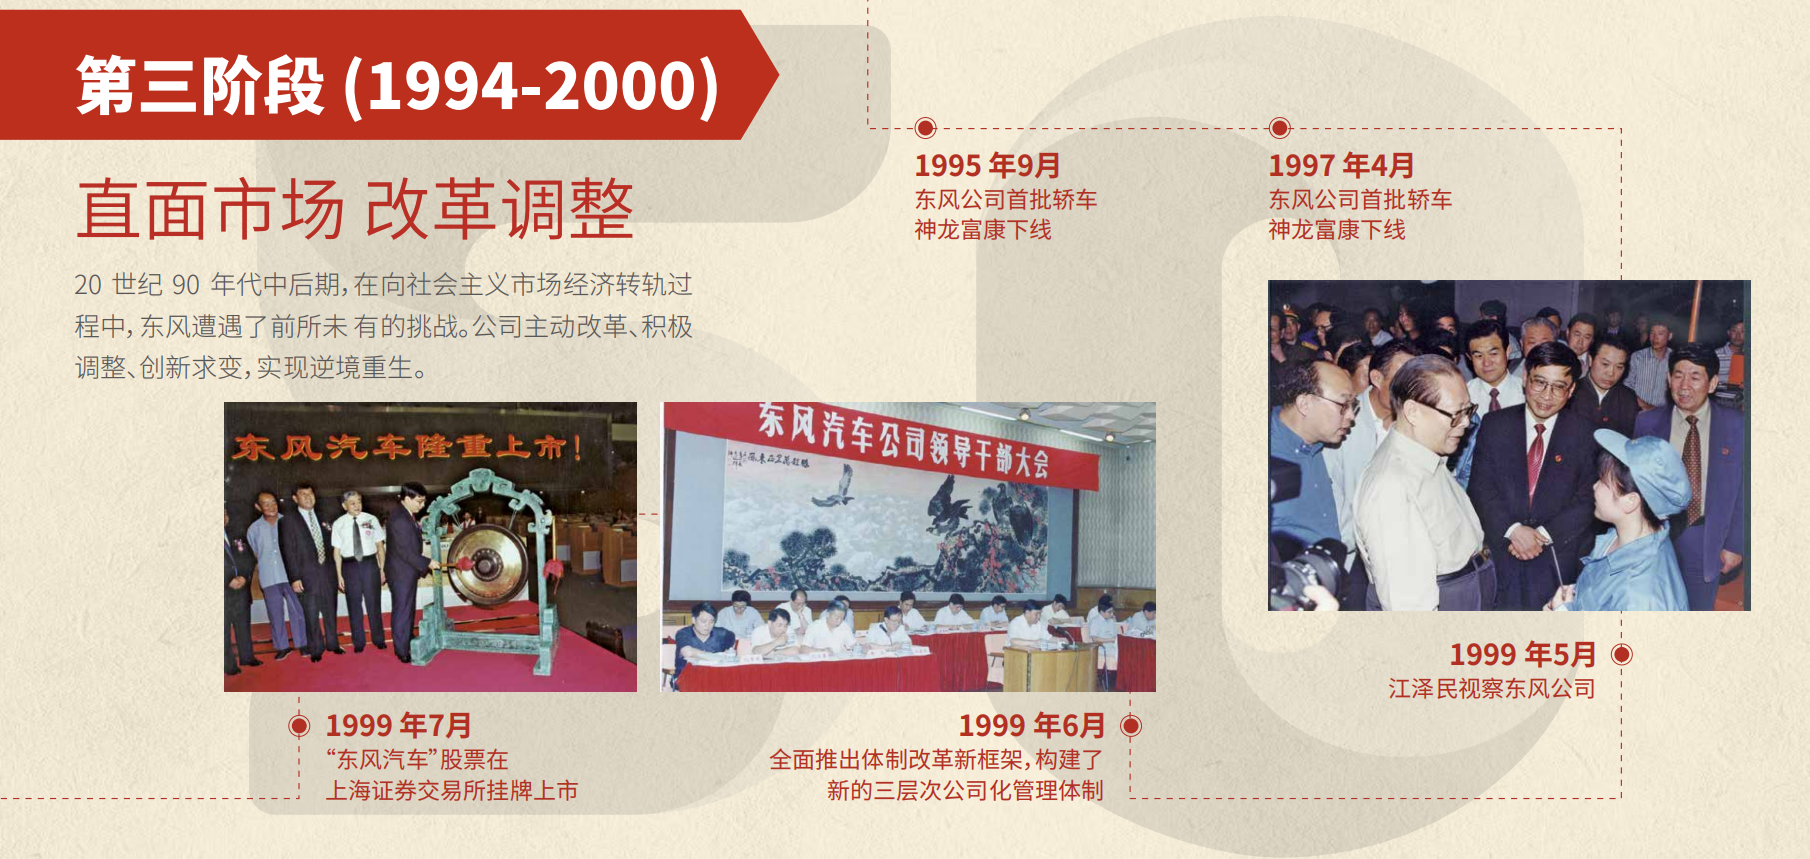 亚洲bet356体育在线官网50周年大事记第三阶段